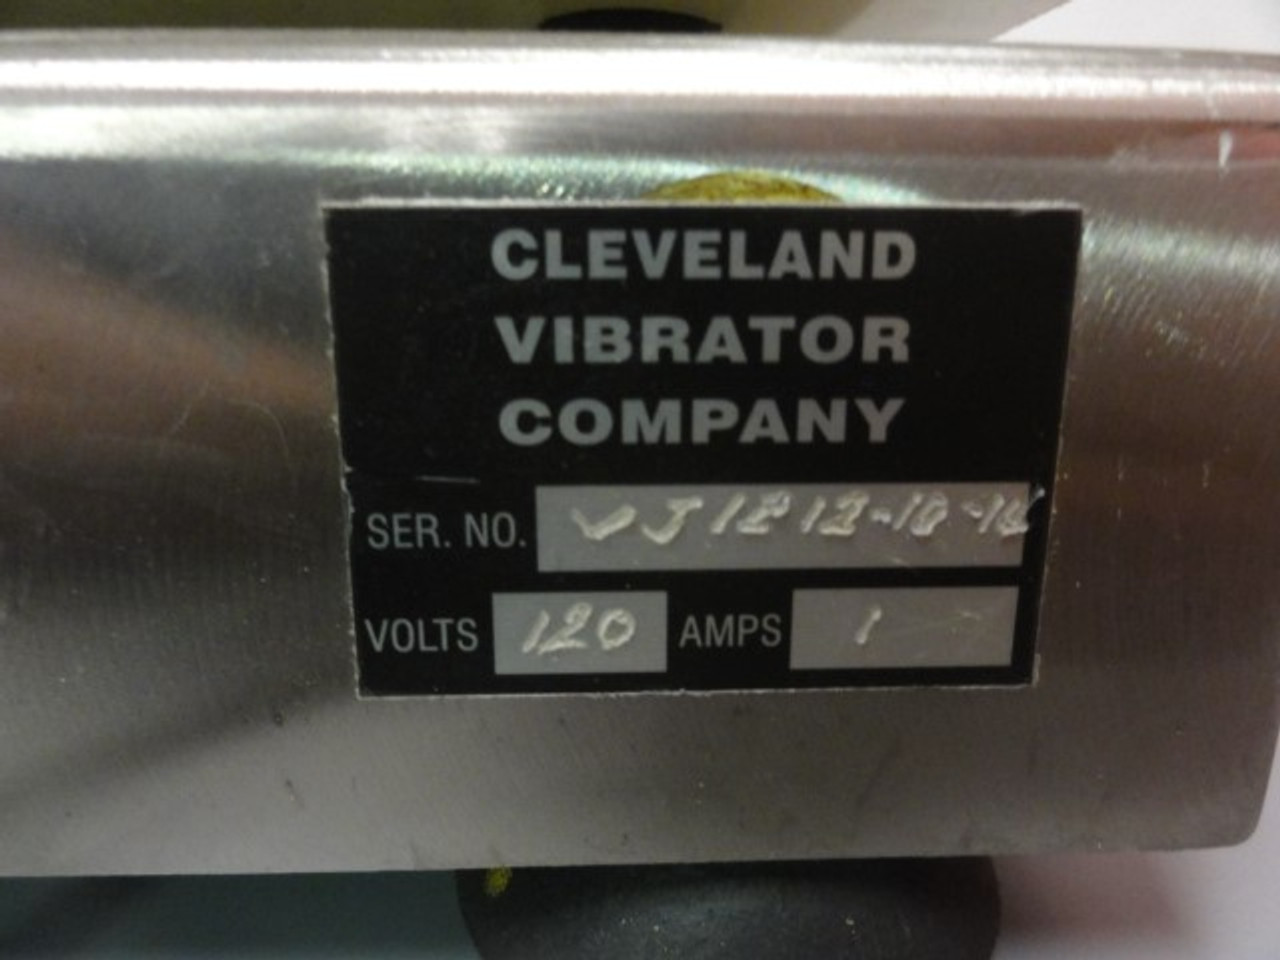 The Cleveland Vibrator Co. VJ-1212 Vibratory Jogger